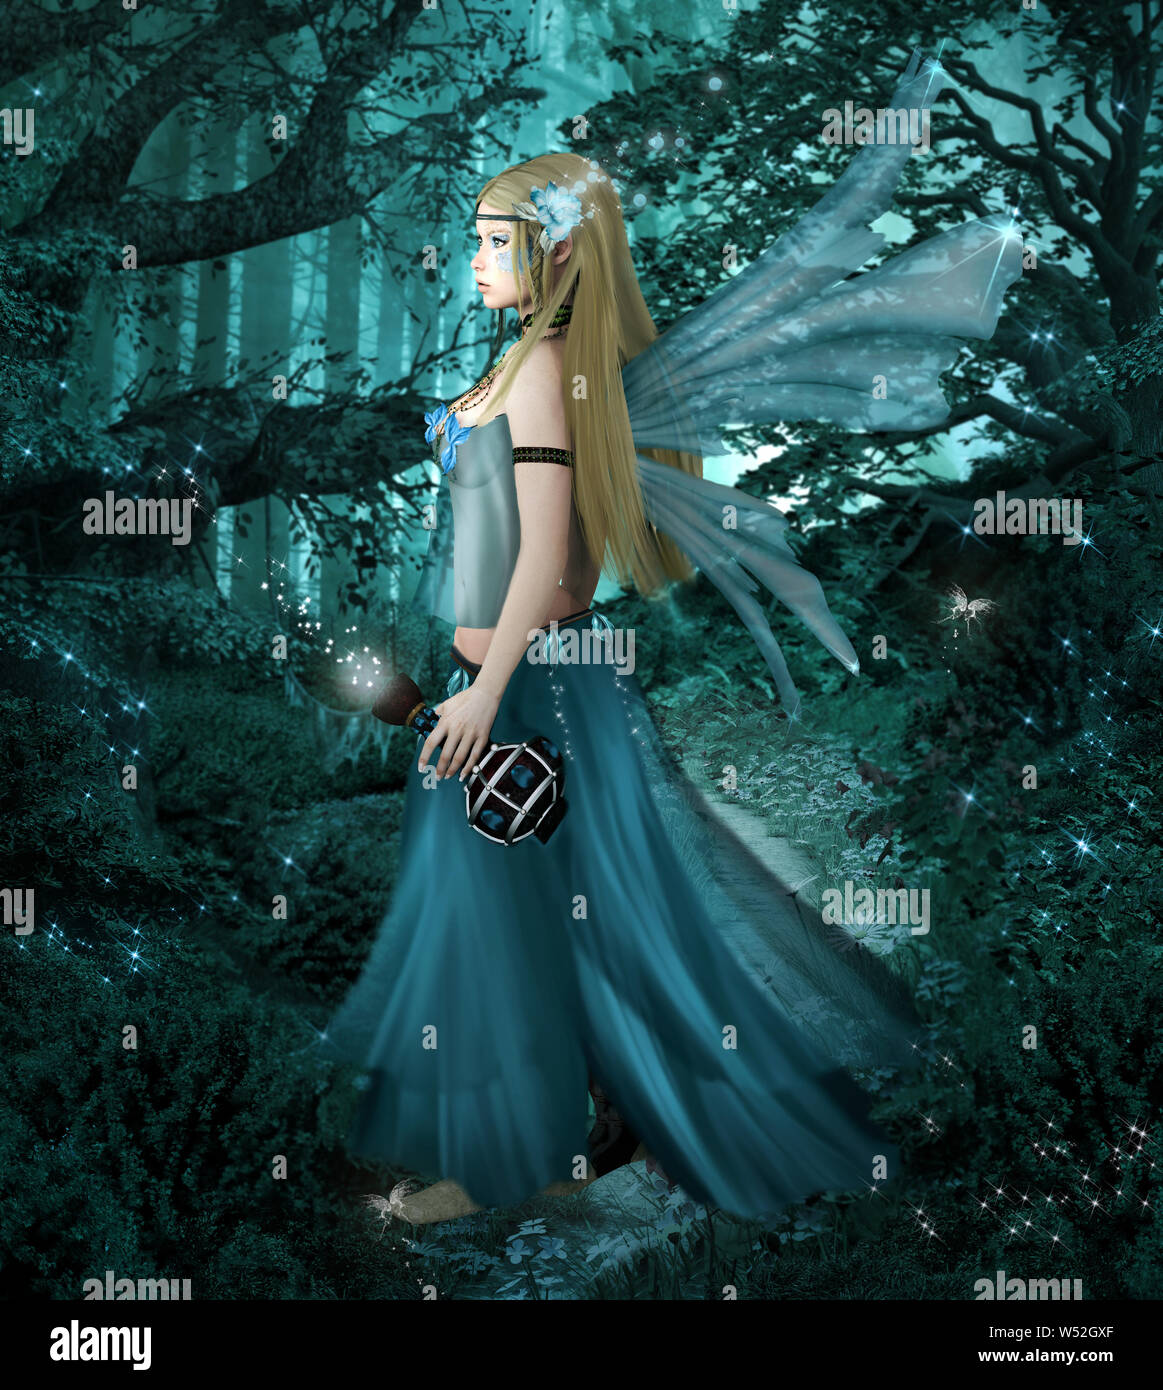 Hada azul con una poción de amor mágica en el bosque neblinoso - Ilustración 3D Foto de stock